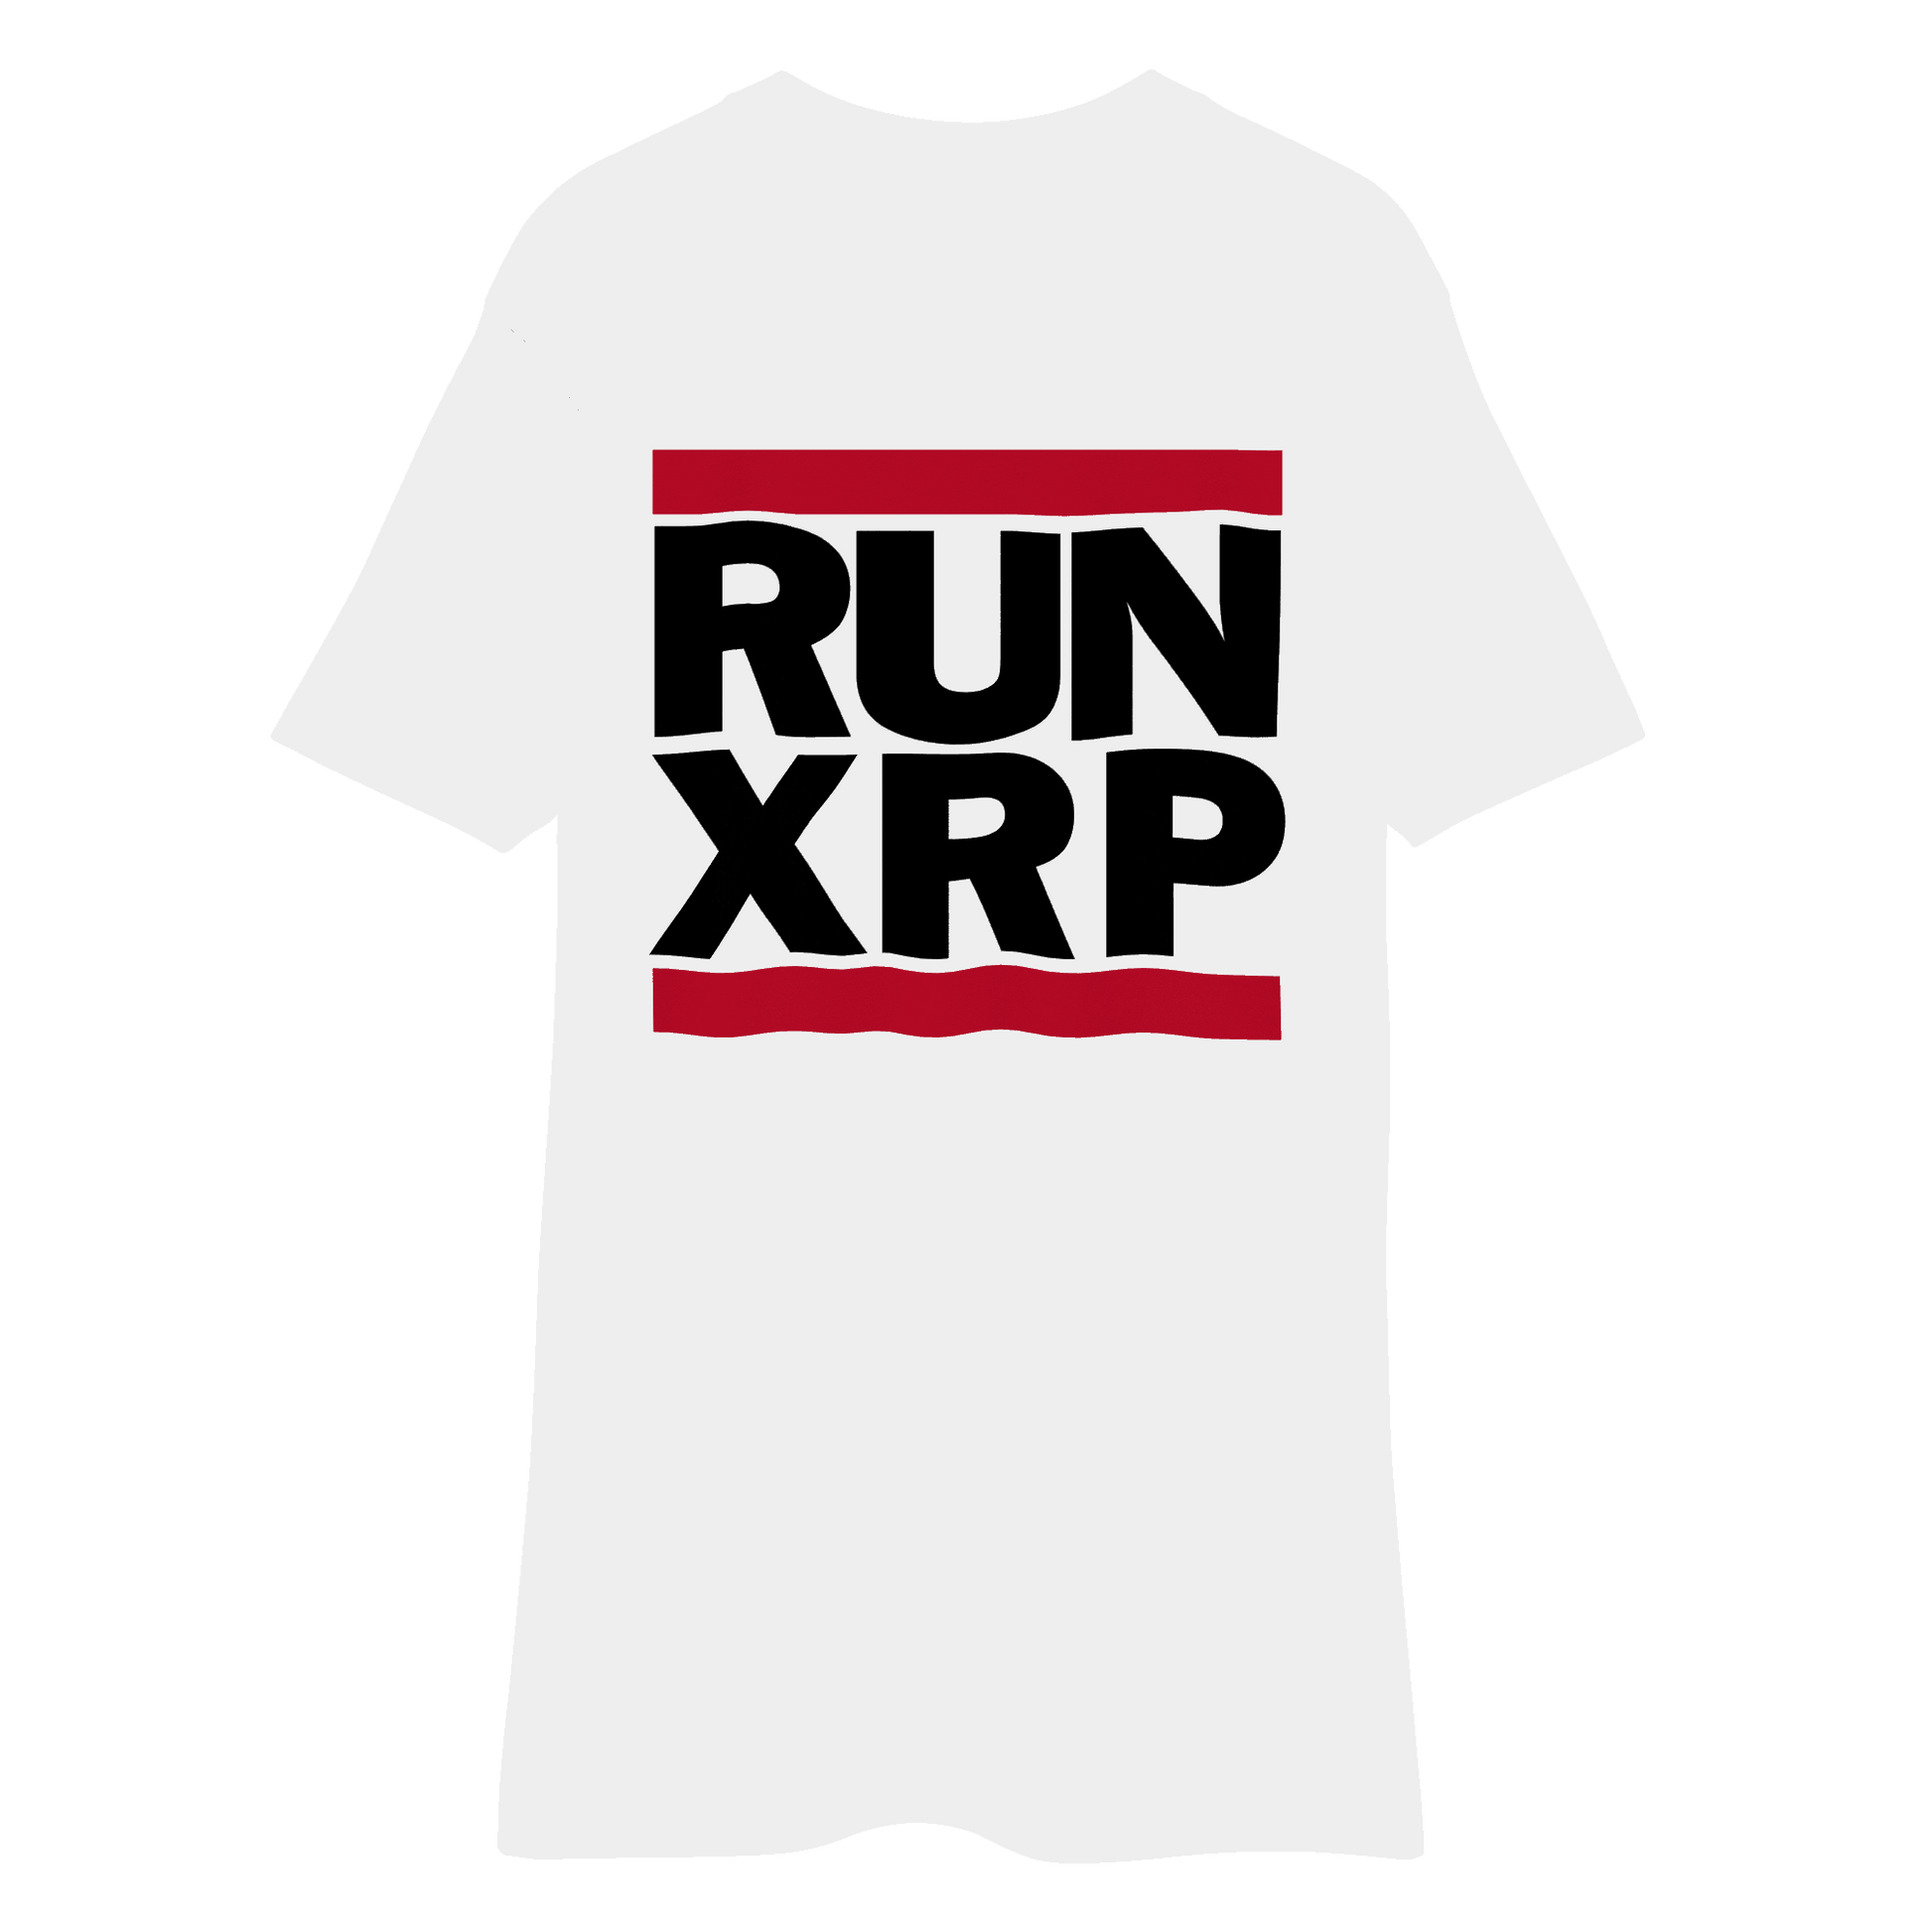 RUN XRP - White Men’s premium heavyweight tee